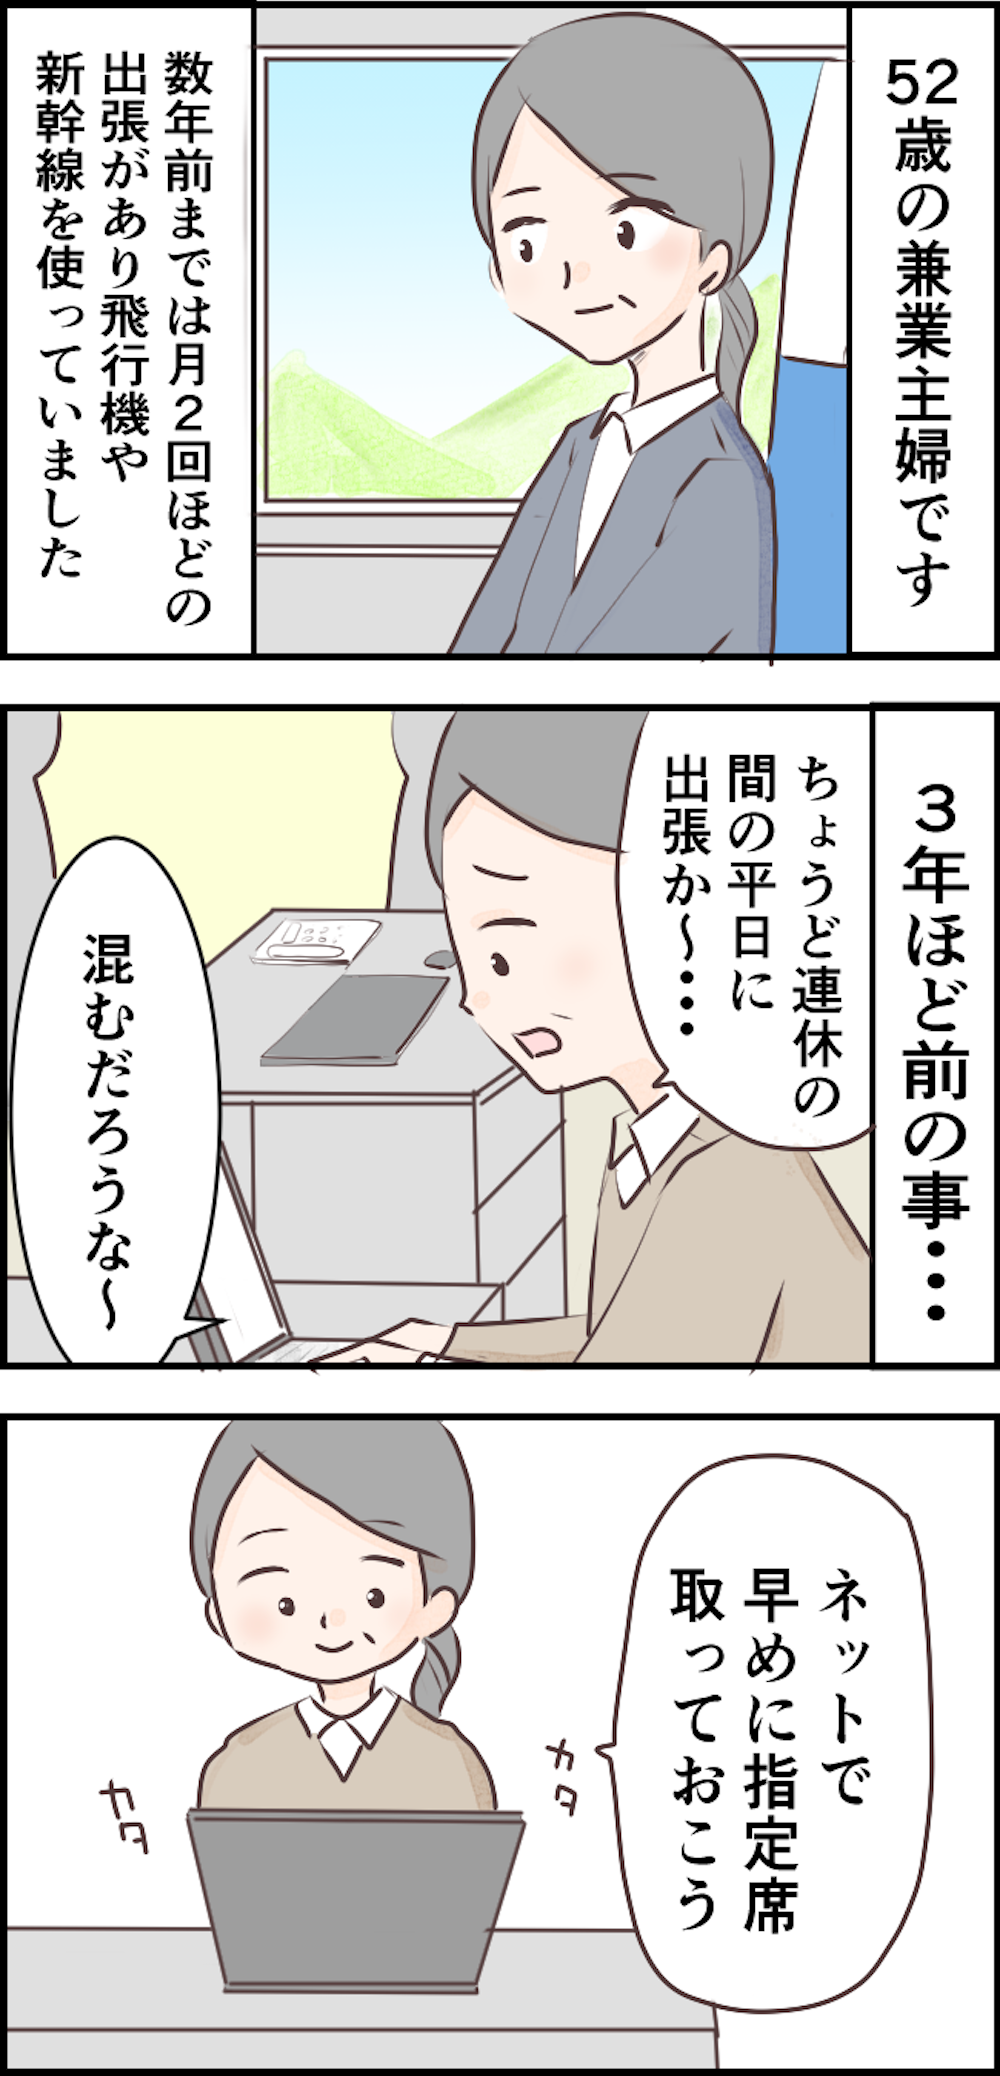 【非常識親子】新幹線の私の席を占領して「うちら親子なんやから空気読んで」って何言ってるの【漫画】 sashi.png